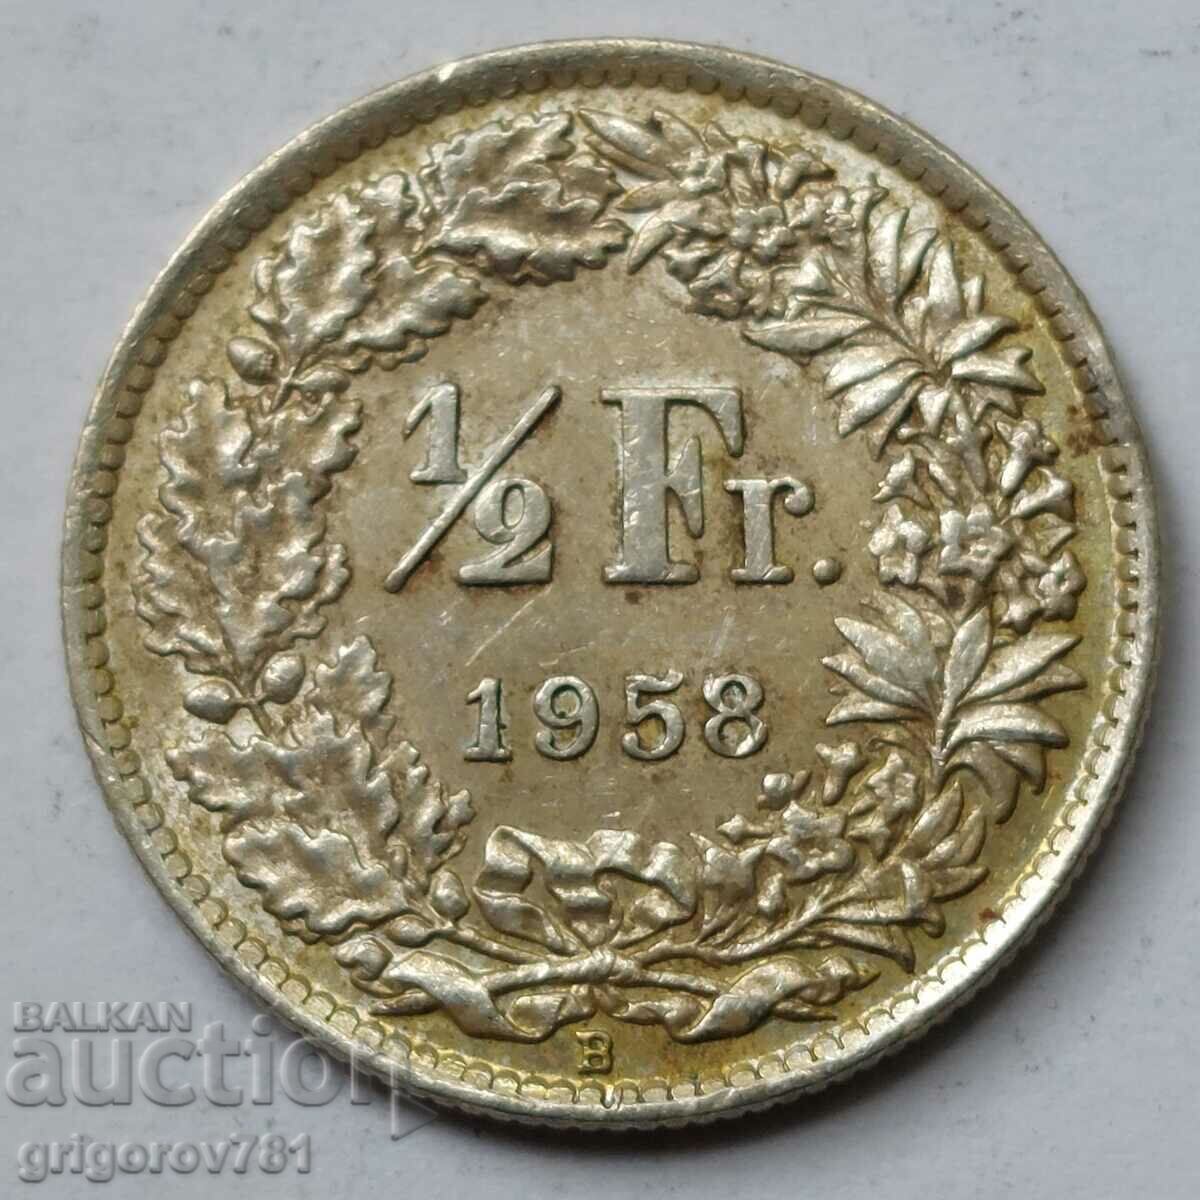 Ασημένιο φράγκο 1/2 Ελβετία 1958 Β - Ασημένιο νόμισμα #33